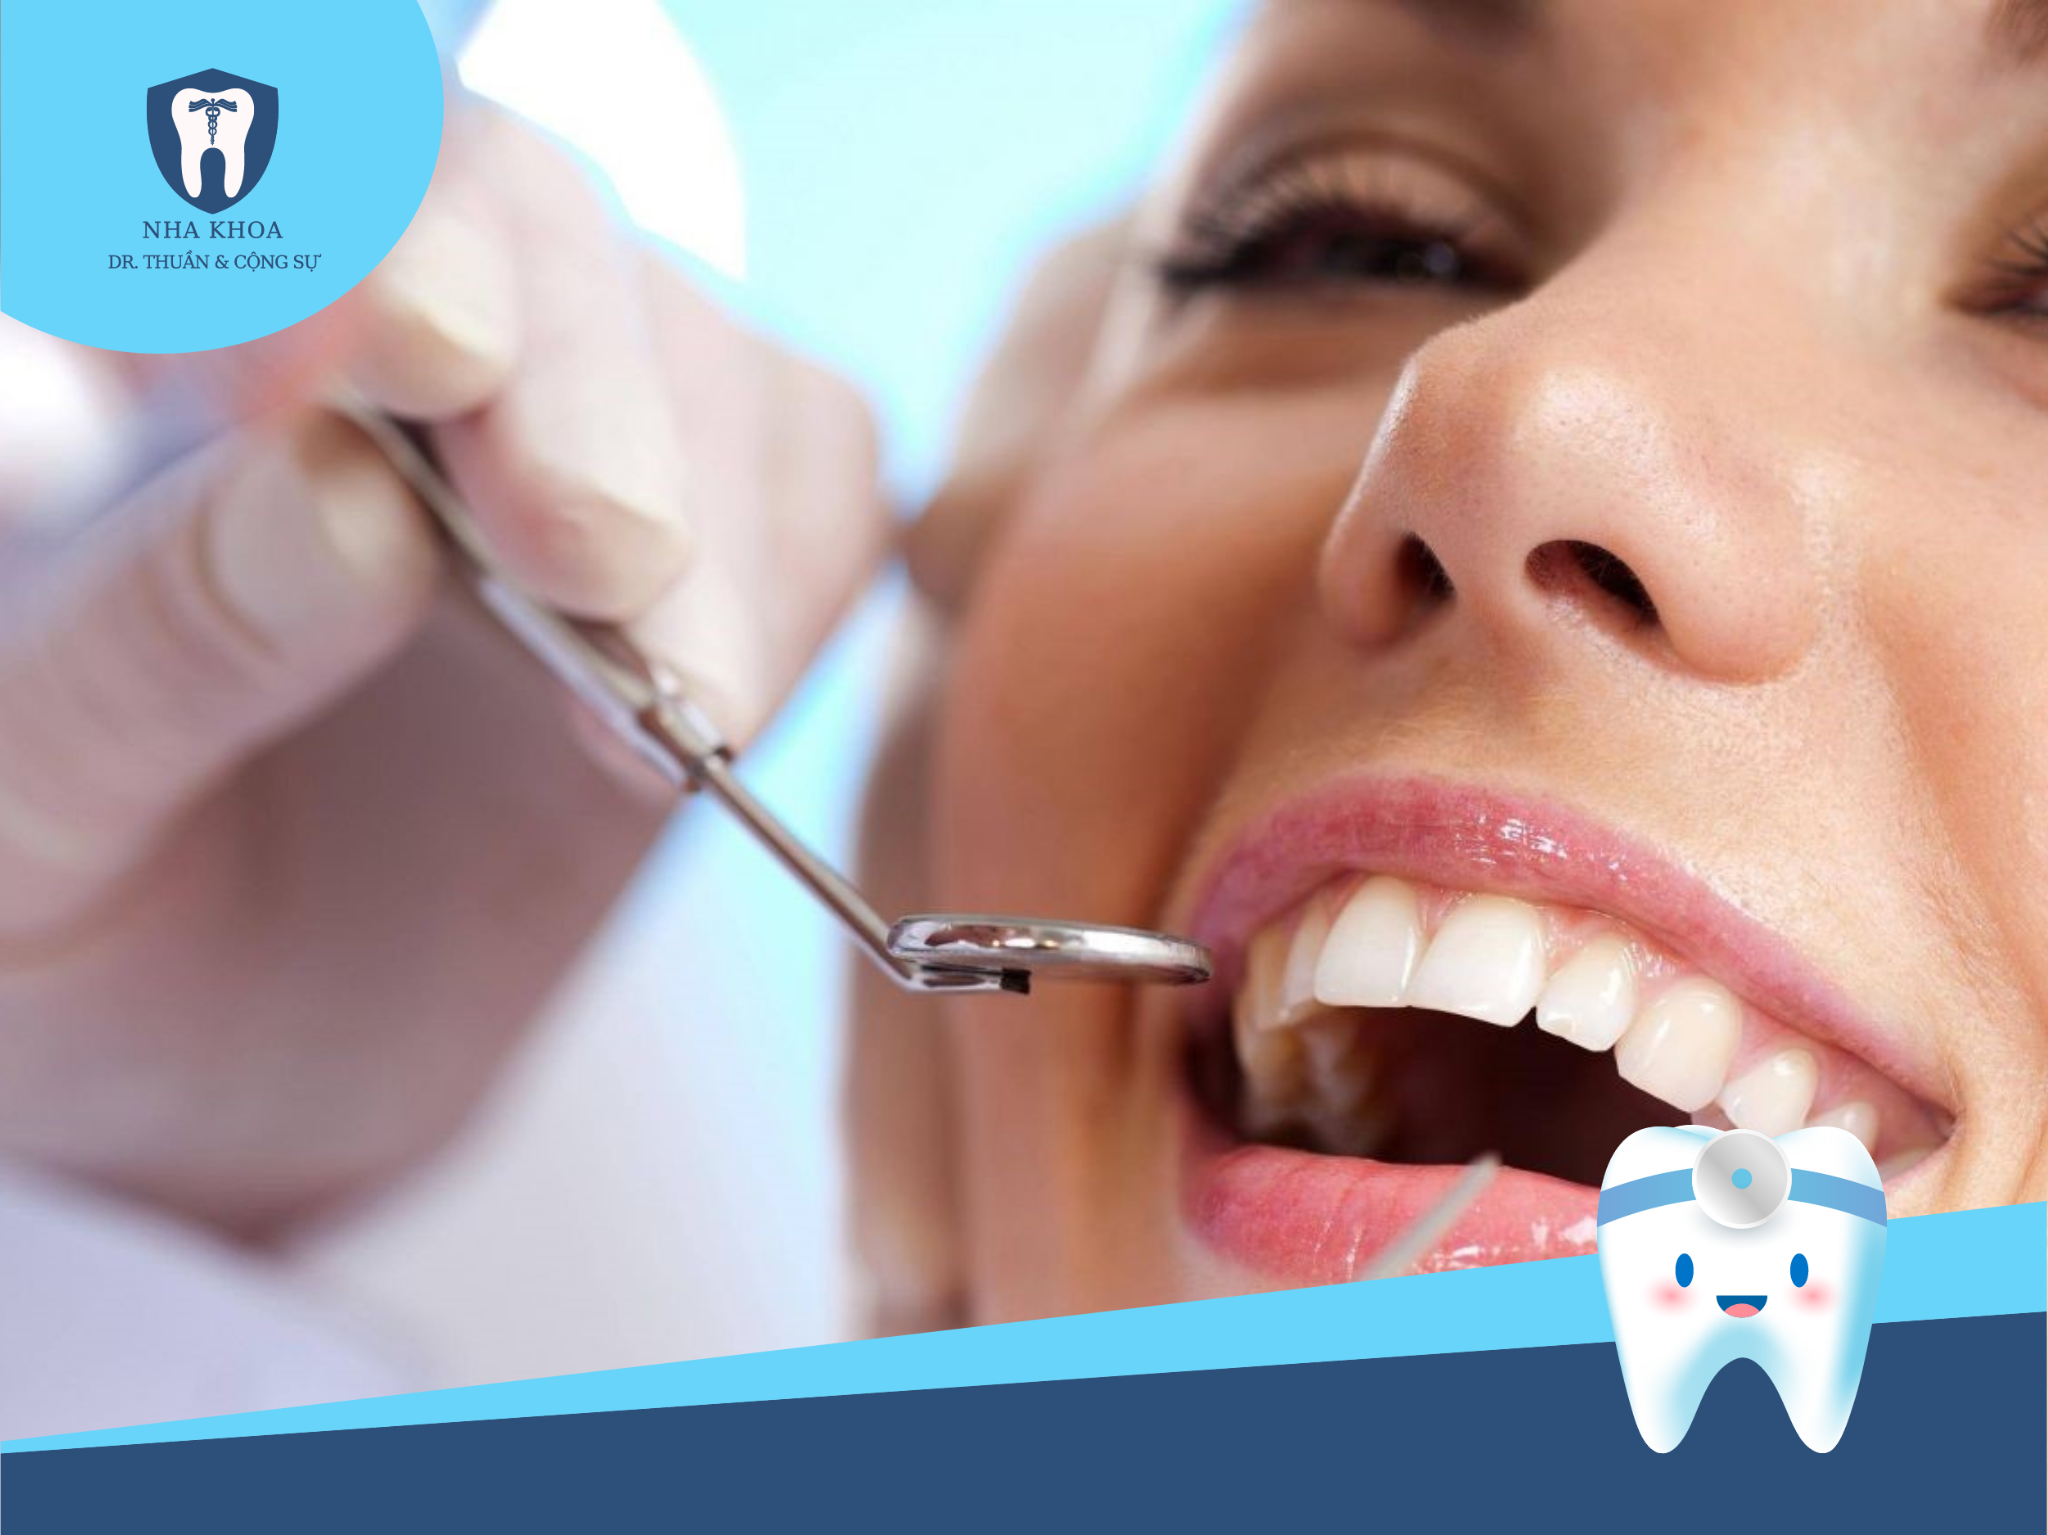 Để đạt hiệu quả cao và đảm bảo an toàn, quy trình bọc răng sứ thẩm mỹ phải được thực hiện đúng chuẩn theo trình tự và đầy đủ các bước.